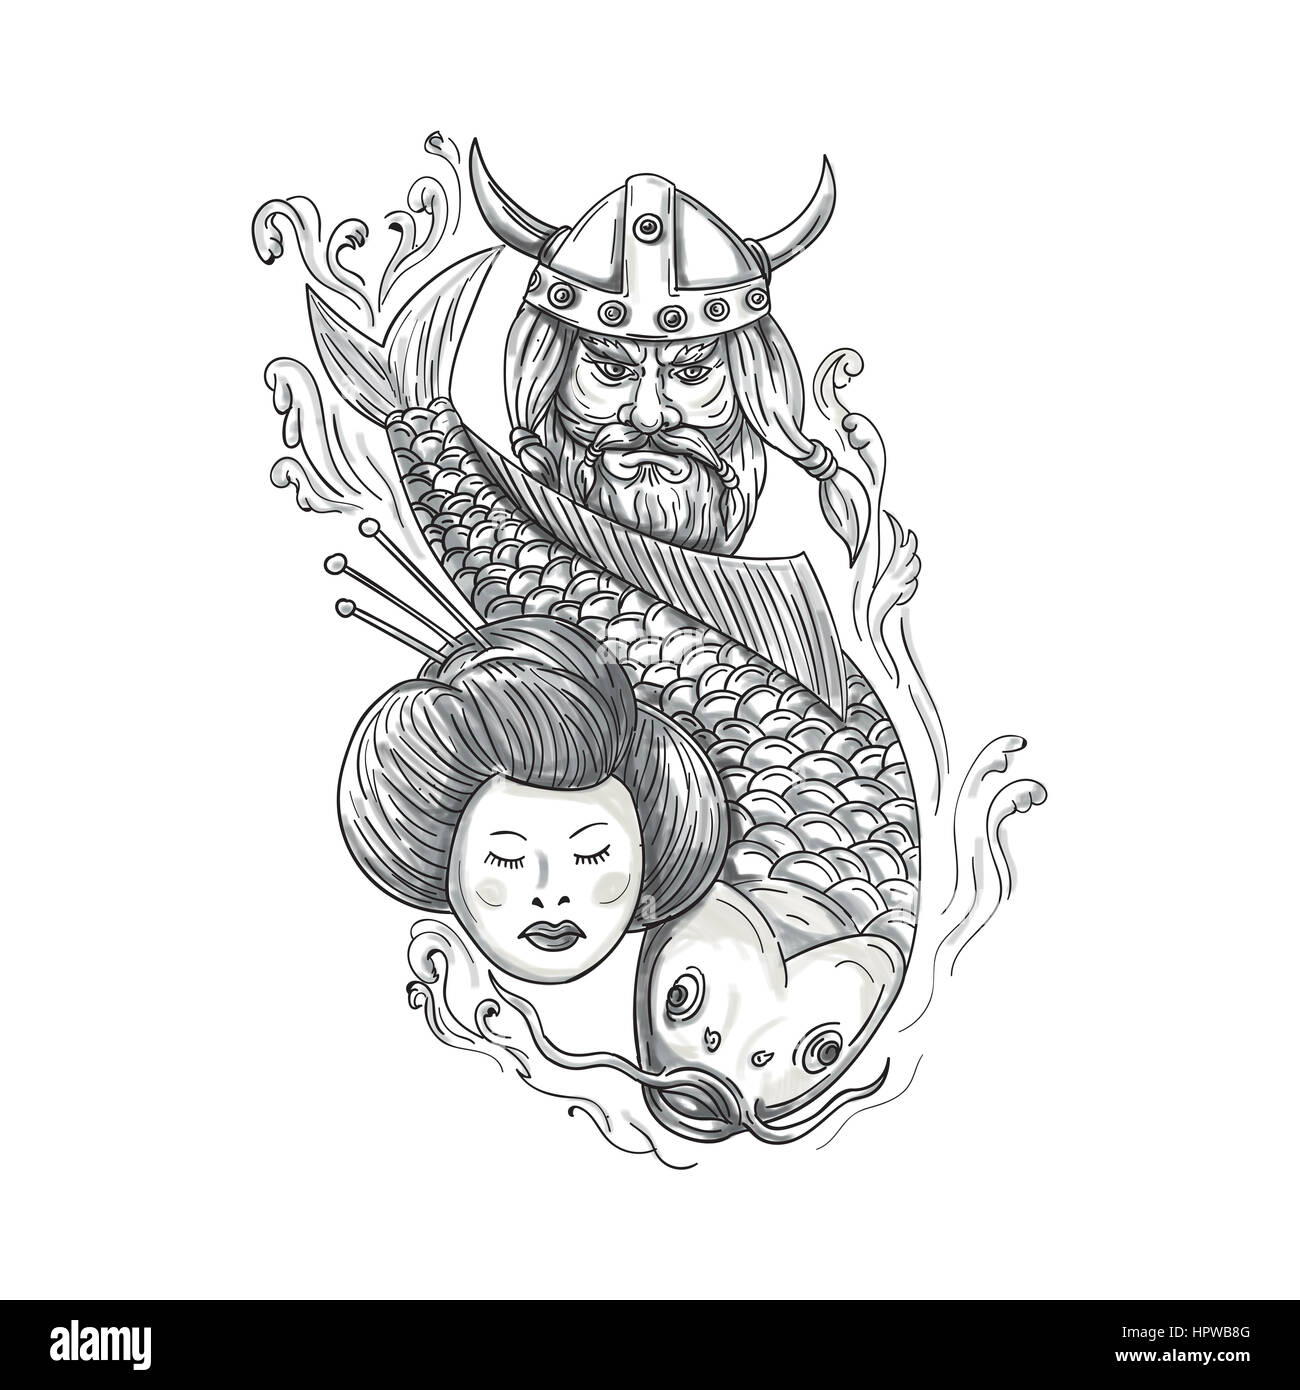 Lo stile di tatuaggio illustrazione di una testa di un norseman viking raider guerriero barbaro cornuto indossa il casco con la barba, carpe koi pesci immersioni e geisha gi Foto Stock